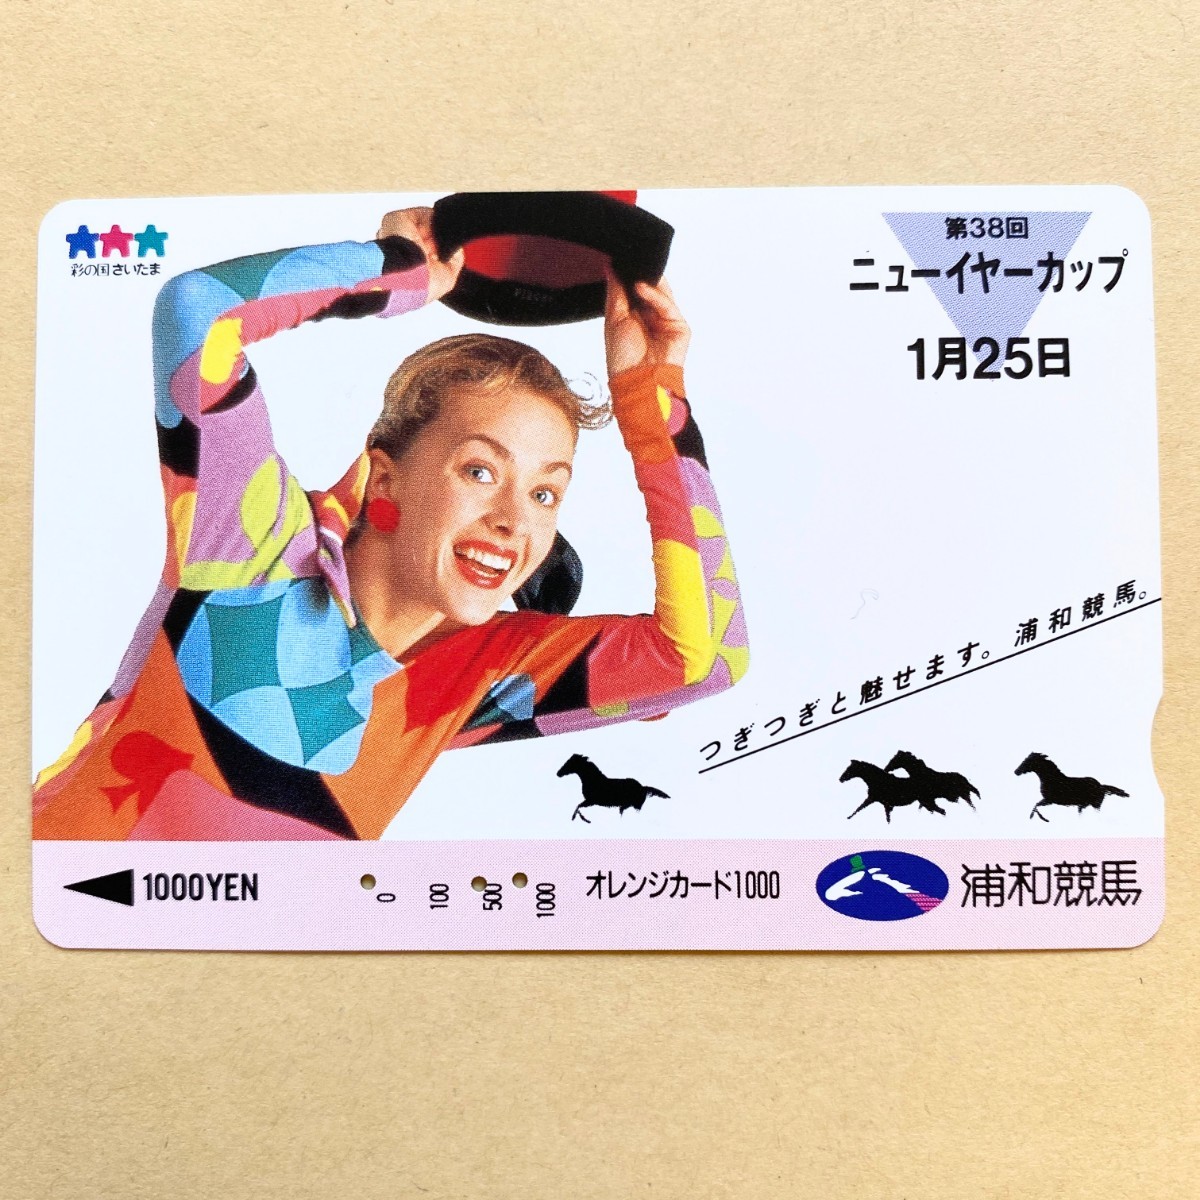 【使用済】 競馬オレンジカード JR東日本 第38回ニューイヤーカップ 1月25日 浦和競馬_画像1